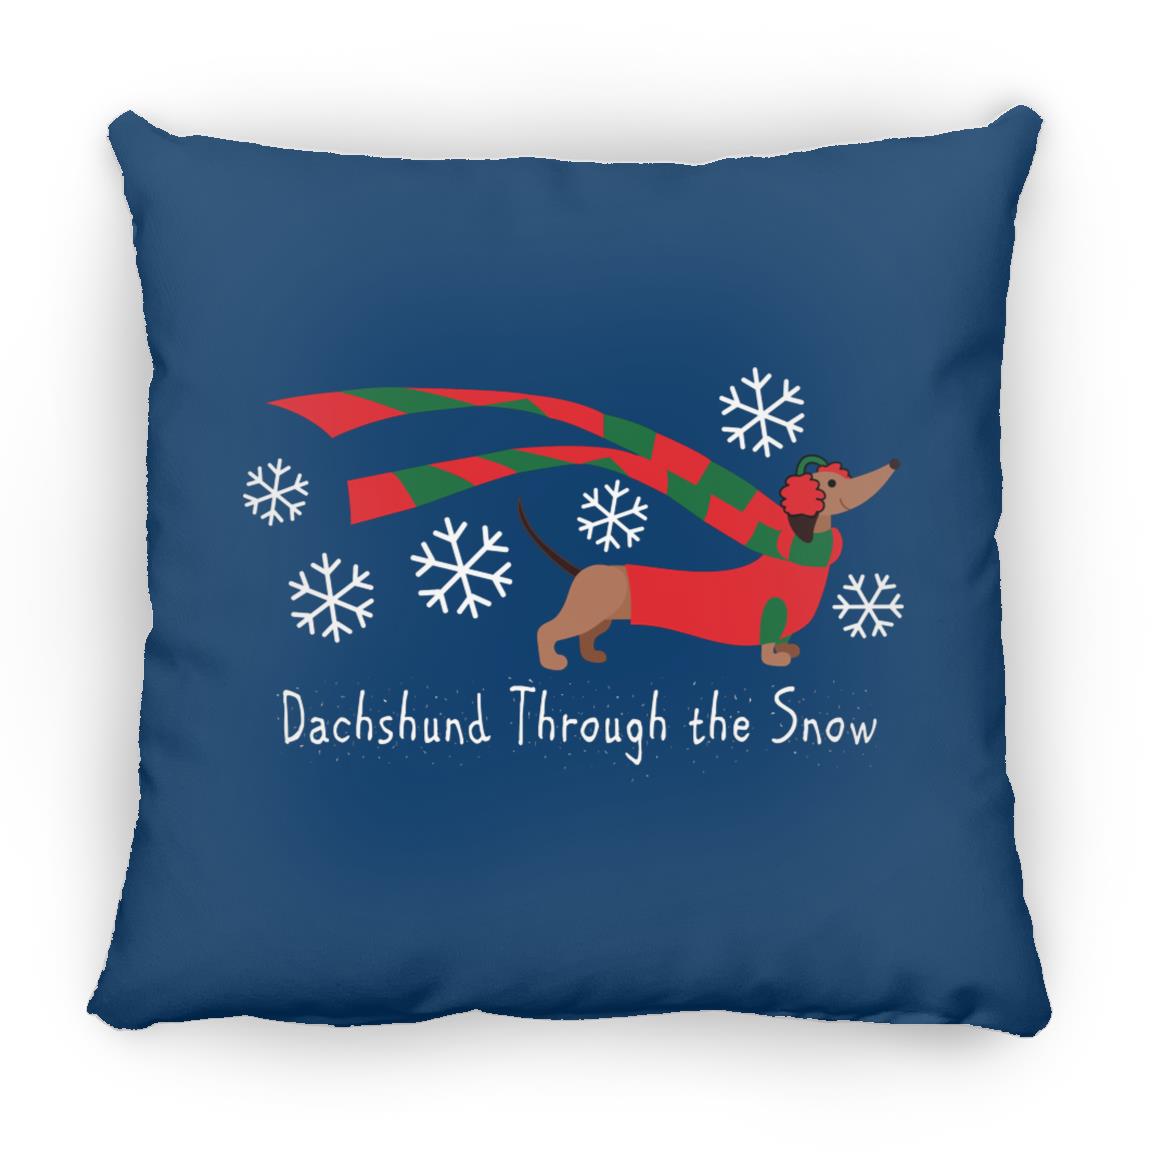 Dachshund Through The Snow Pillows